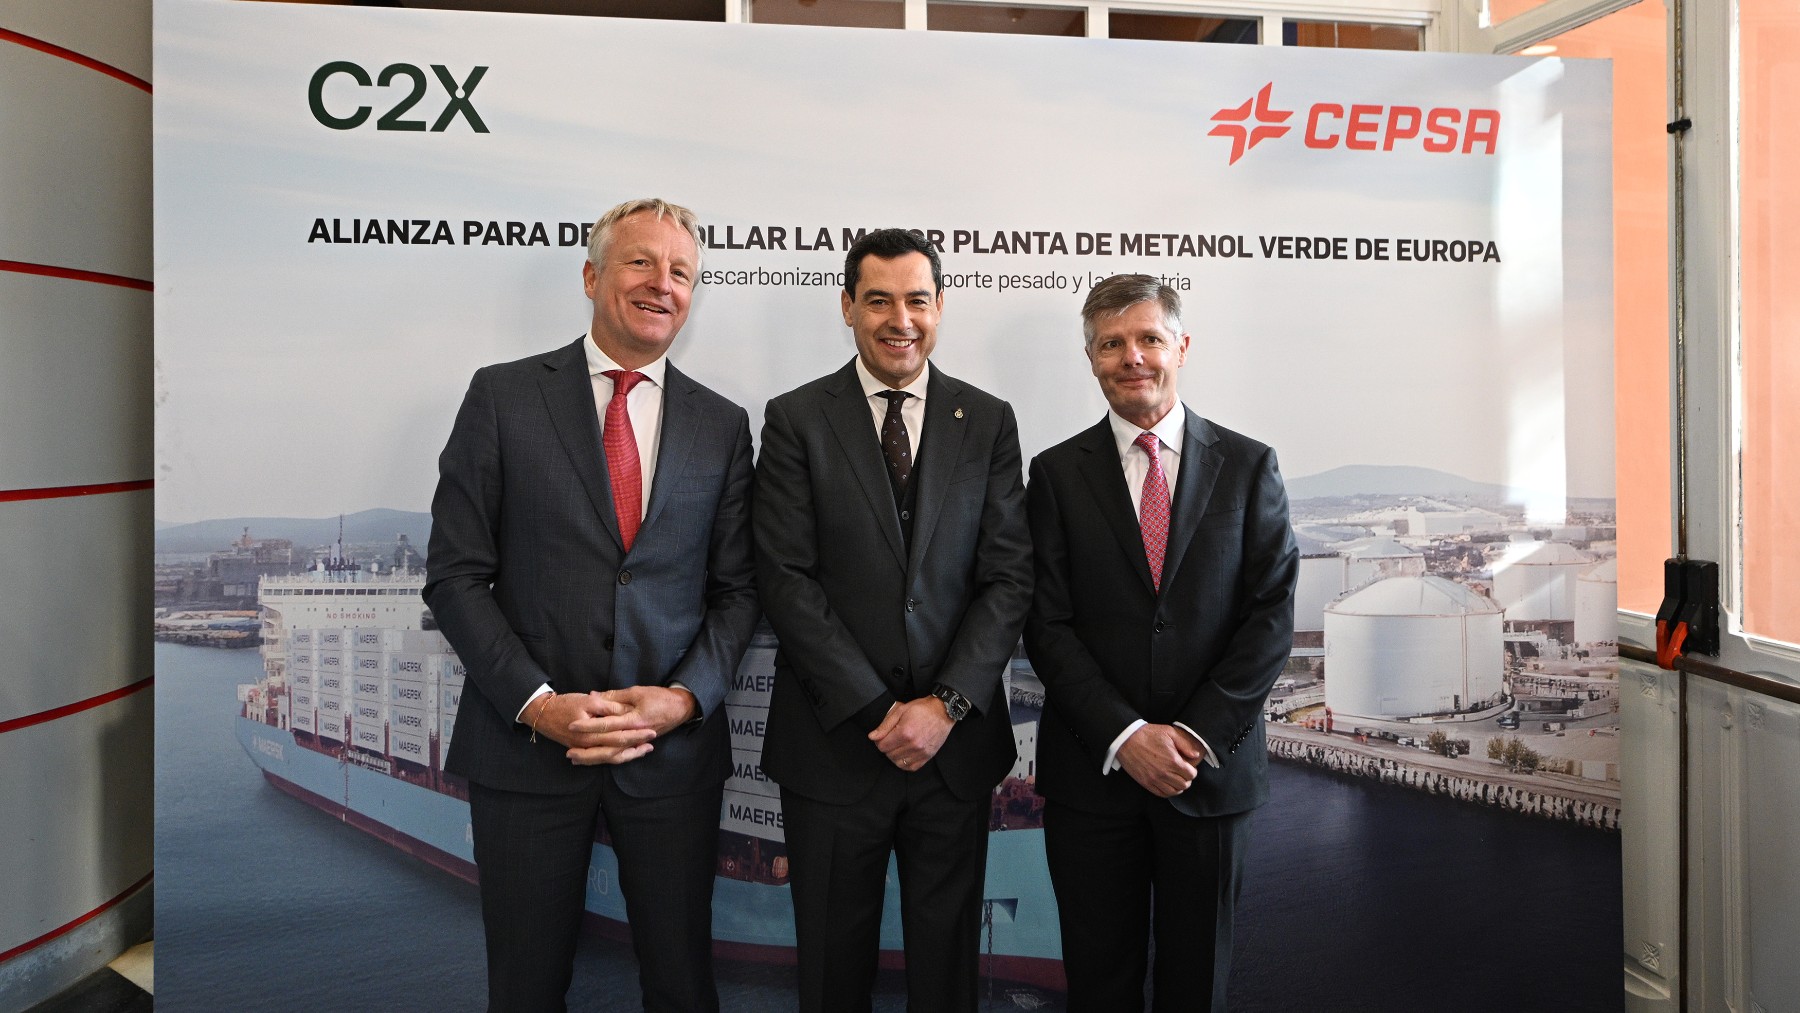 El puerto de Huelva será el hub de metanol verde en Europa con la construcción de esta megaplanta